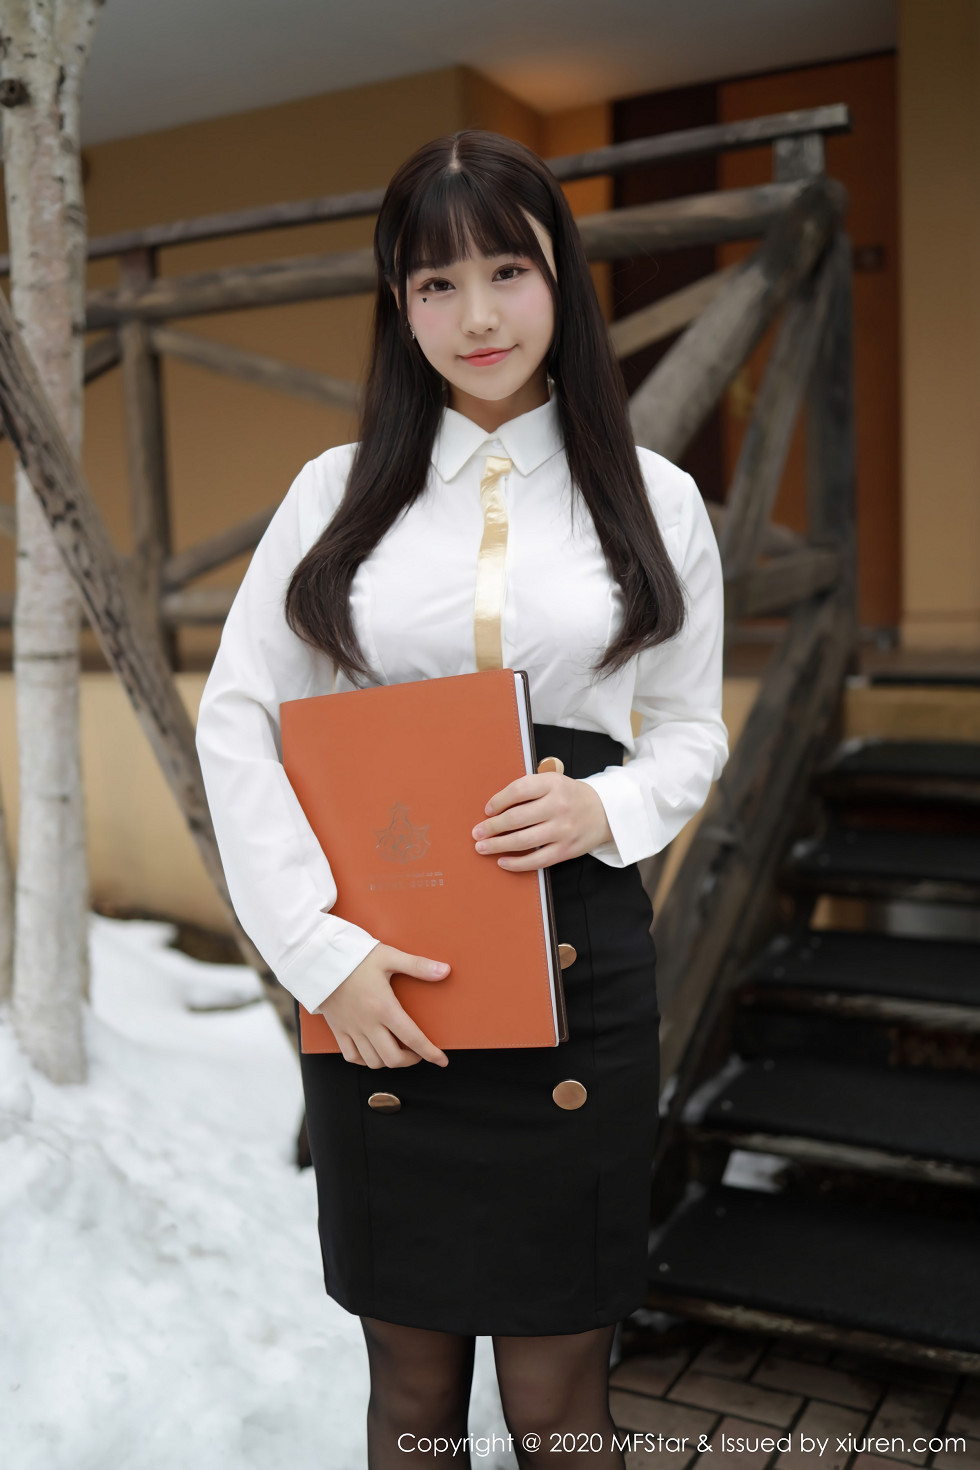 MFStar模范学院嫩模朱可儿北海道旅拍酒店经理主题黑丝制服魅惑套图写真